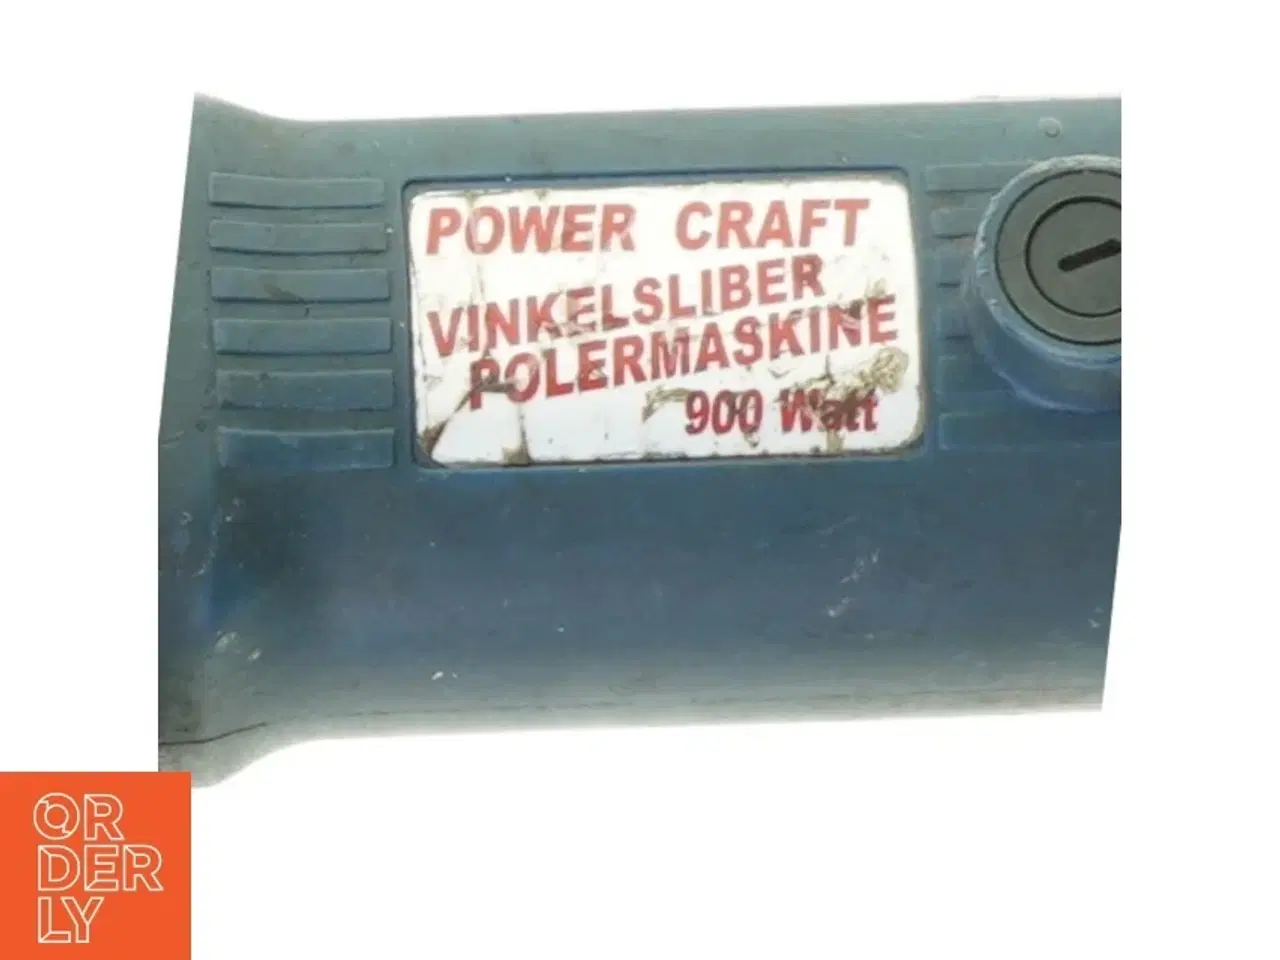 Billede 2 - Vinkelsliber fra Power Craft (str. 50 x 11 xt cm)